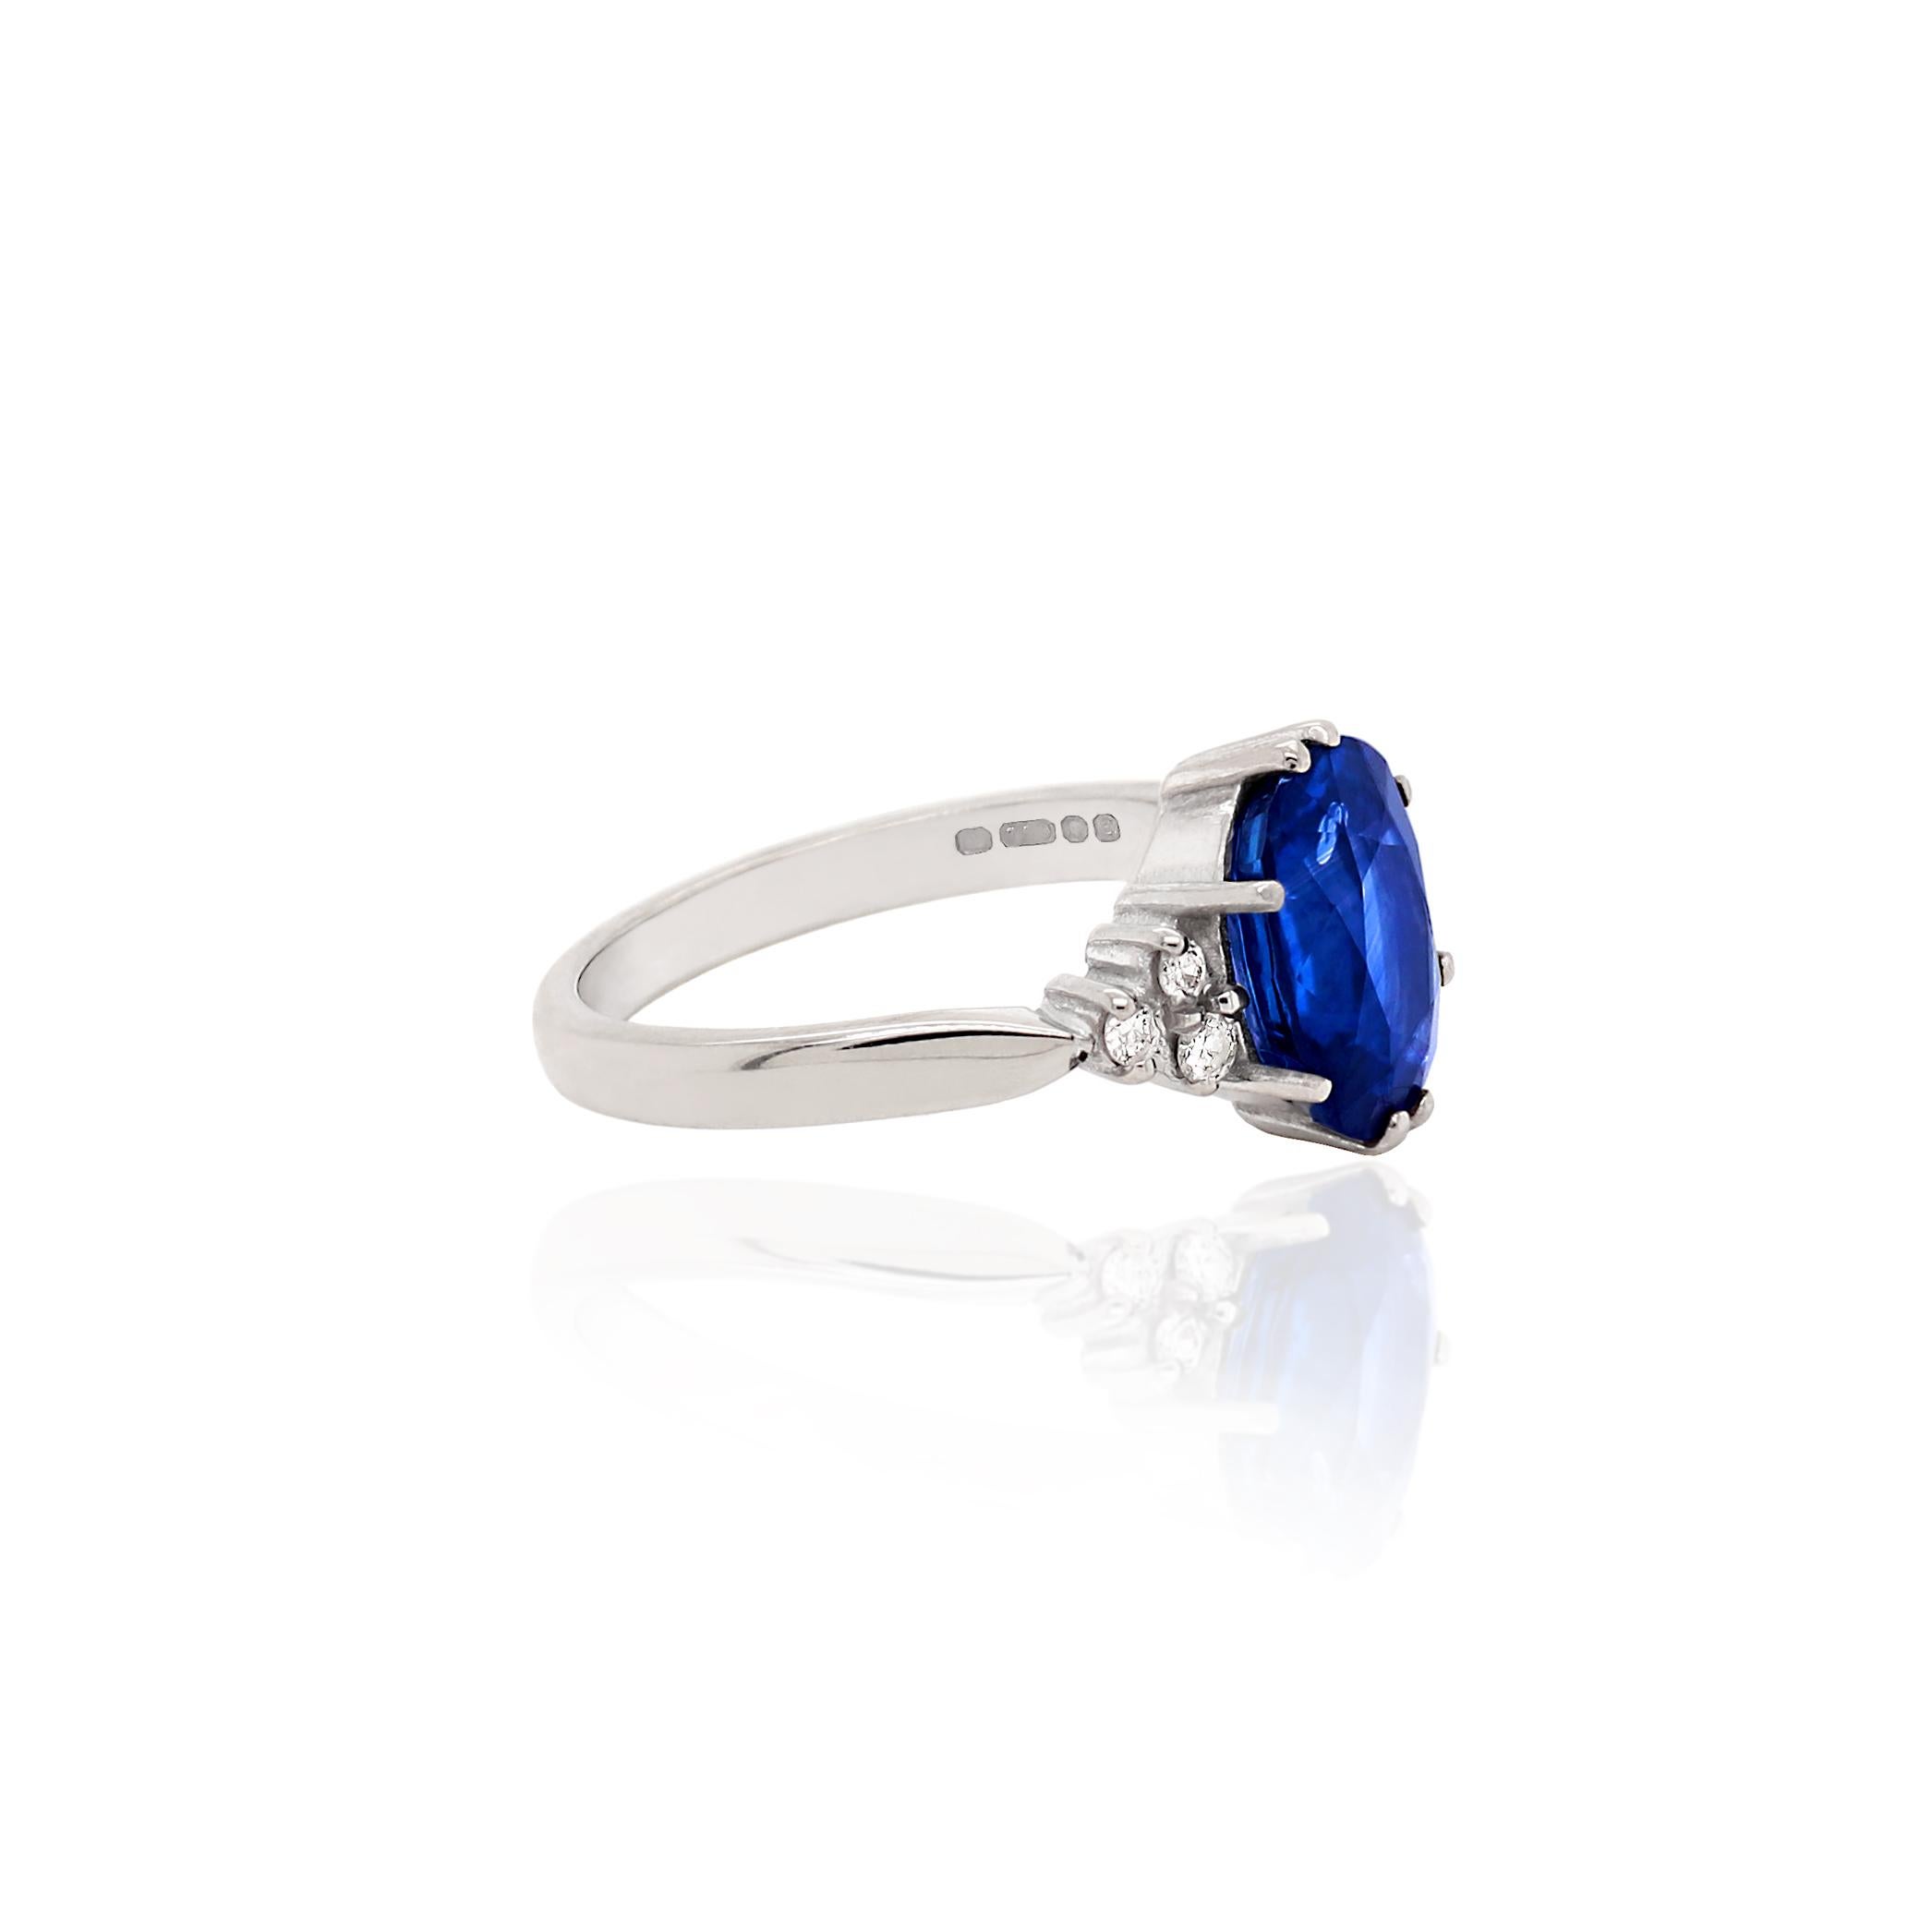 Dieser exquisite Ring zeigt einen königsblauen ovalen Saphir mit einem Gewicht von 3,59 Karat in einer offenen Fassung mit acht Krallen. Dieser wunderschöne Stein wird von drei runden Diamanten im Brillantschliff mit einem Gesamtgewicht von 0,12